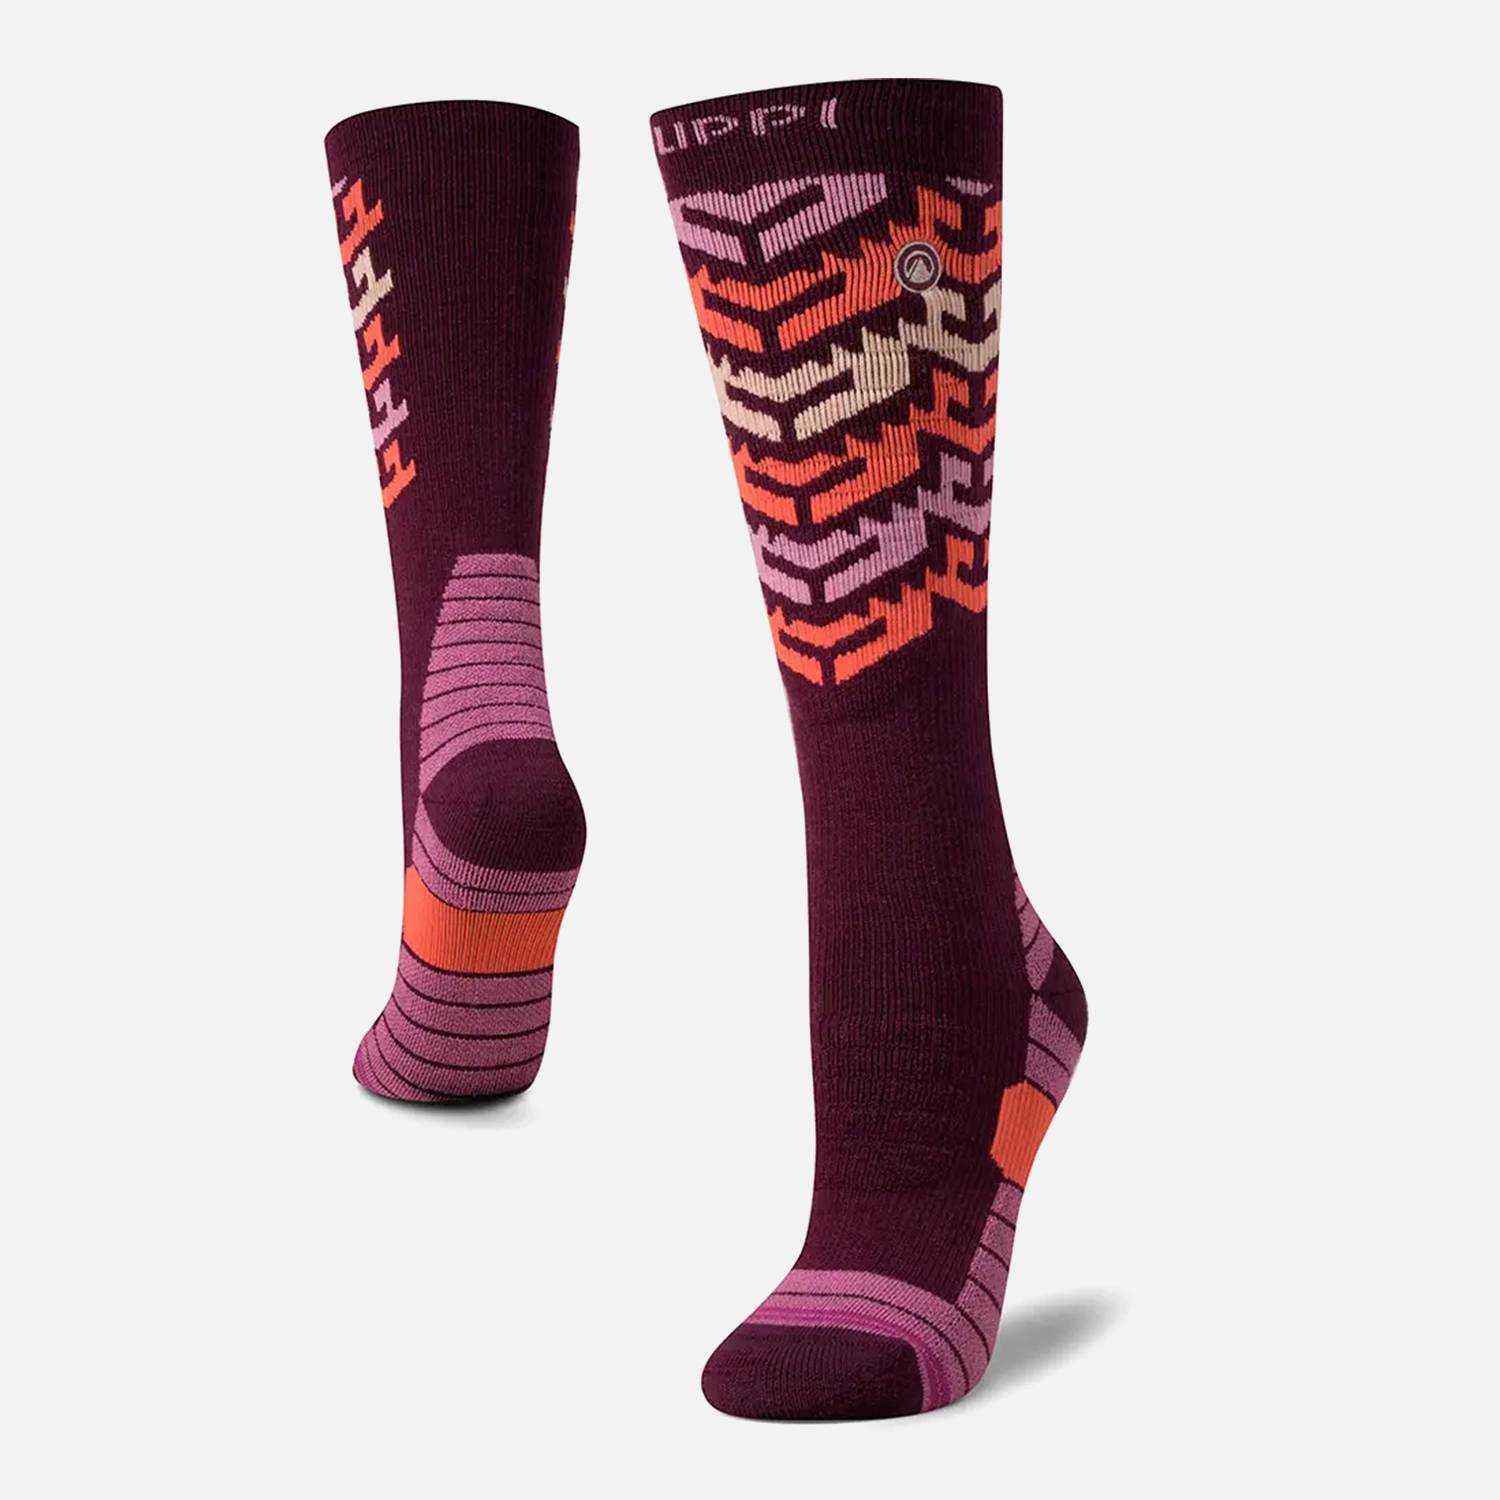 Calcetines Mujer Ski Socks Purpura Lippi | falabella.com